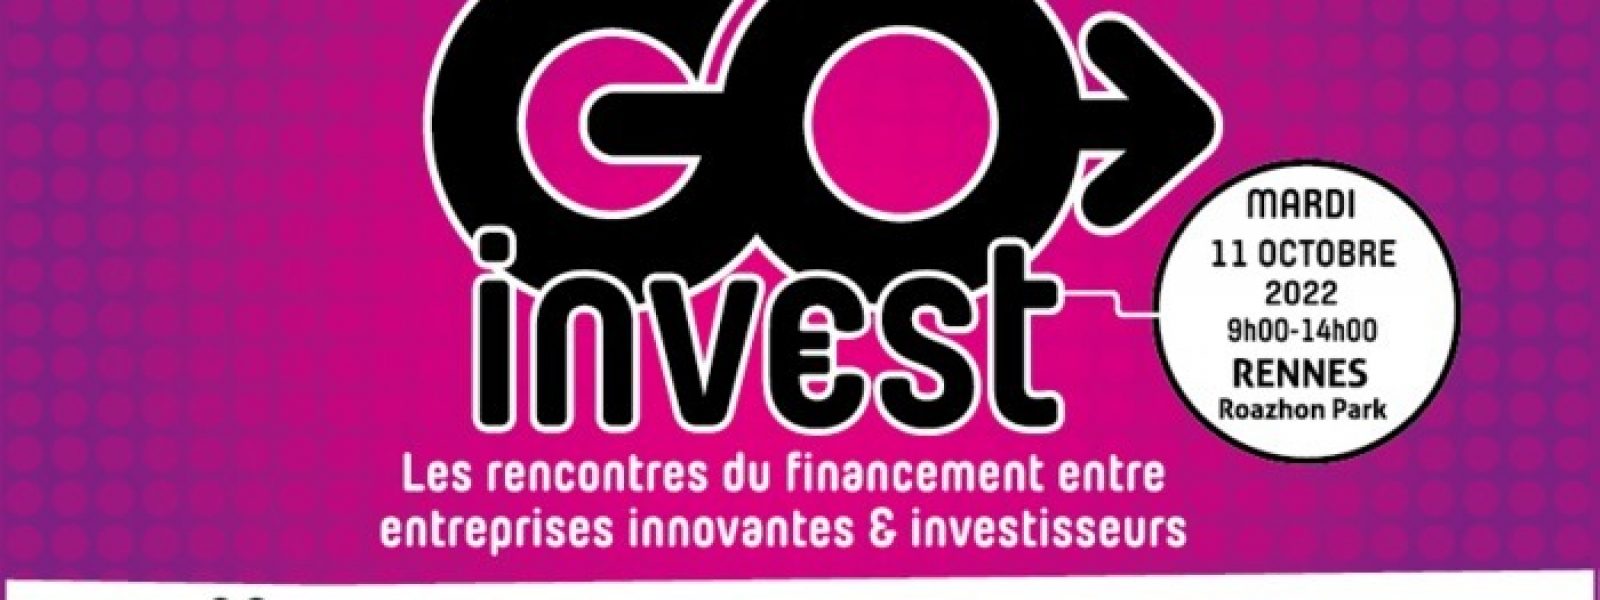 Visuel Go Invest 2022